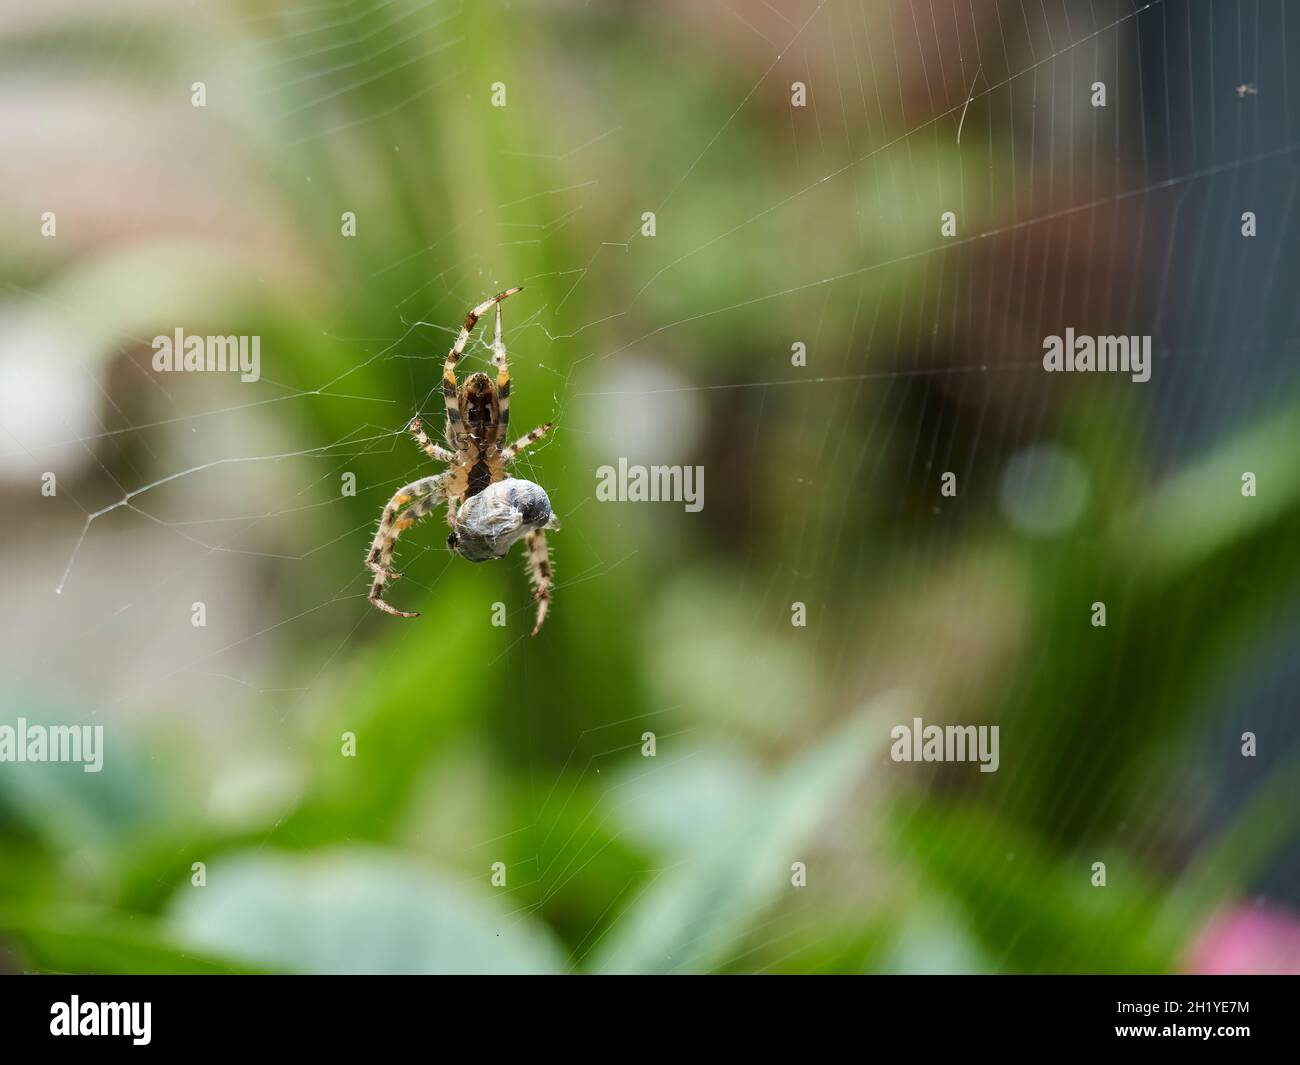 Une araignée de jardin, suspendue dans sa toile, fait tourner la soie autour de sa proie malheureuse, la cocooning pour la stocker pour une consommation ultérieure. Banque D'Images